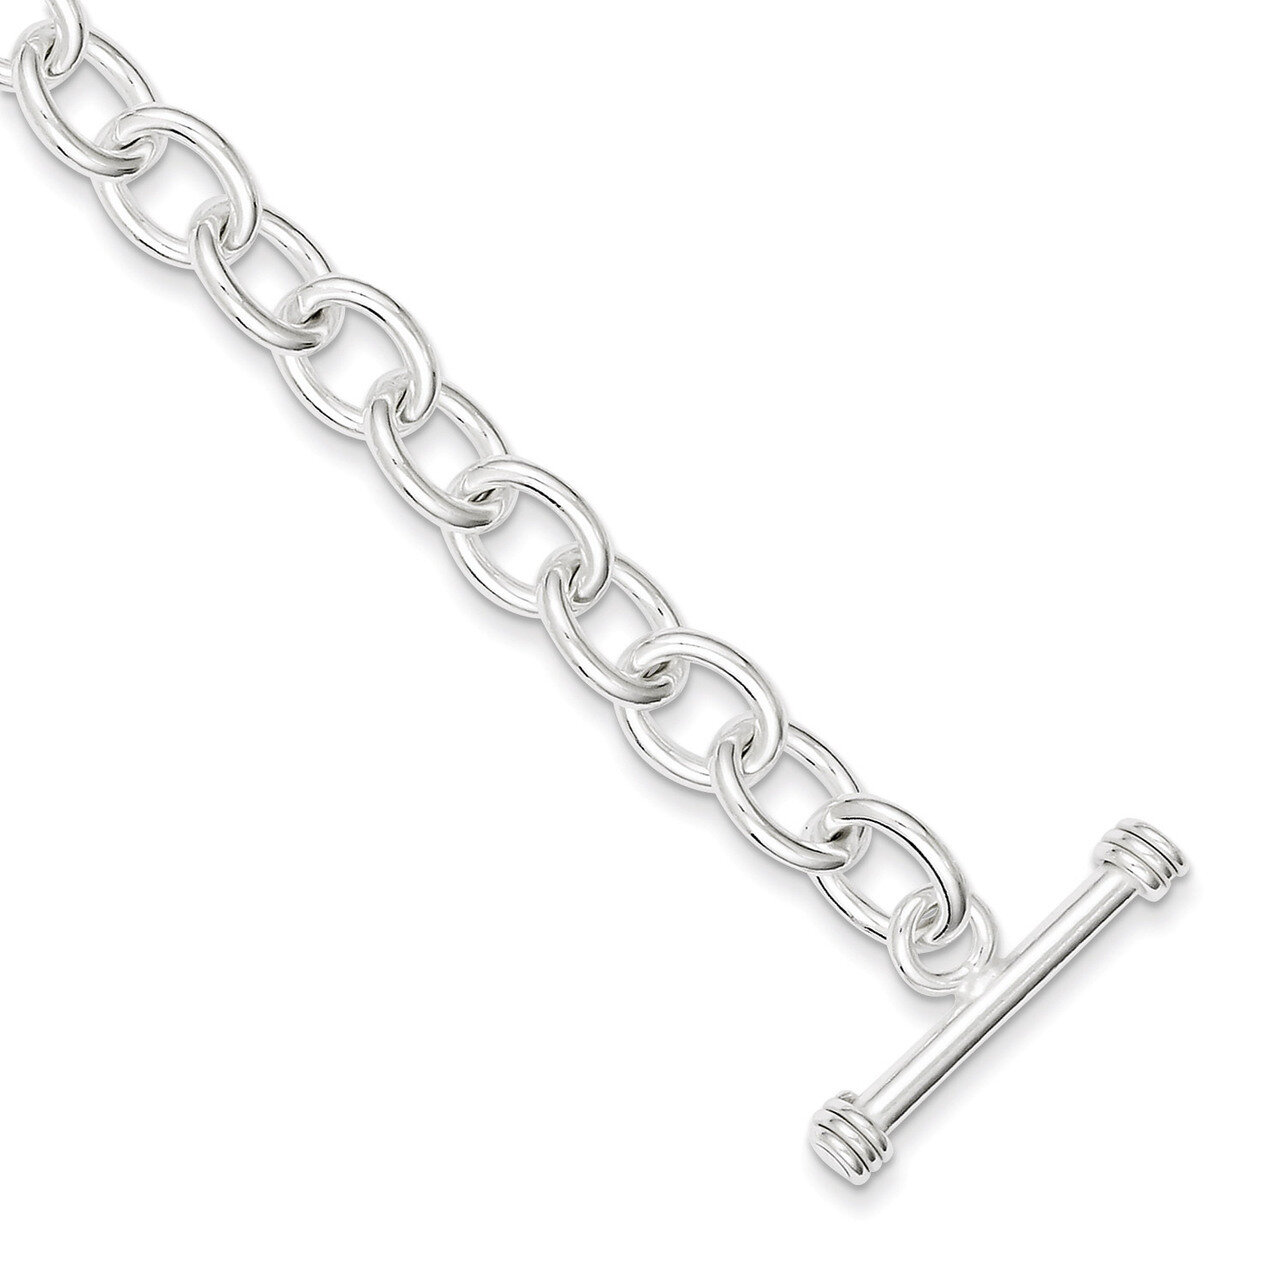 8.75 Inch Fancy Link Toggle Bracelet Sterling Silver Polished QH130-8.75